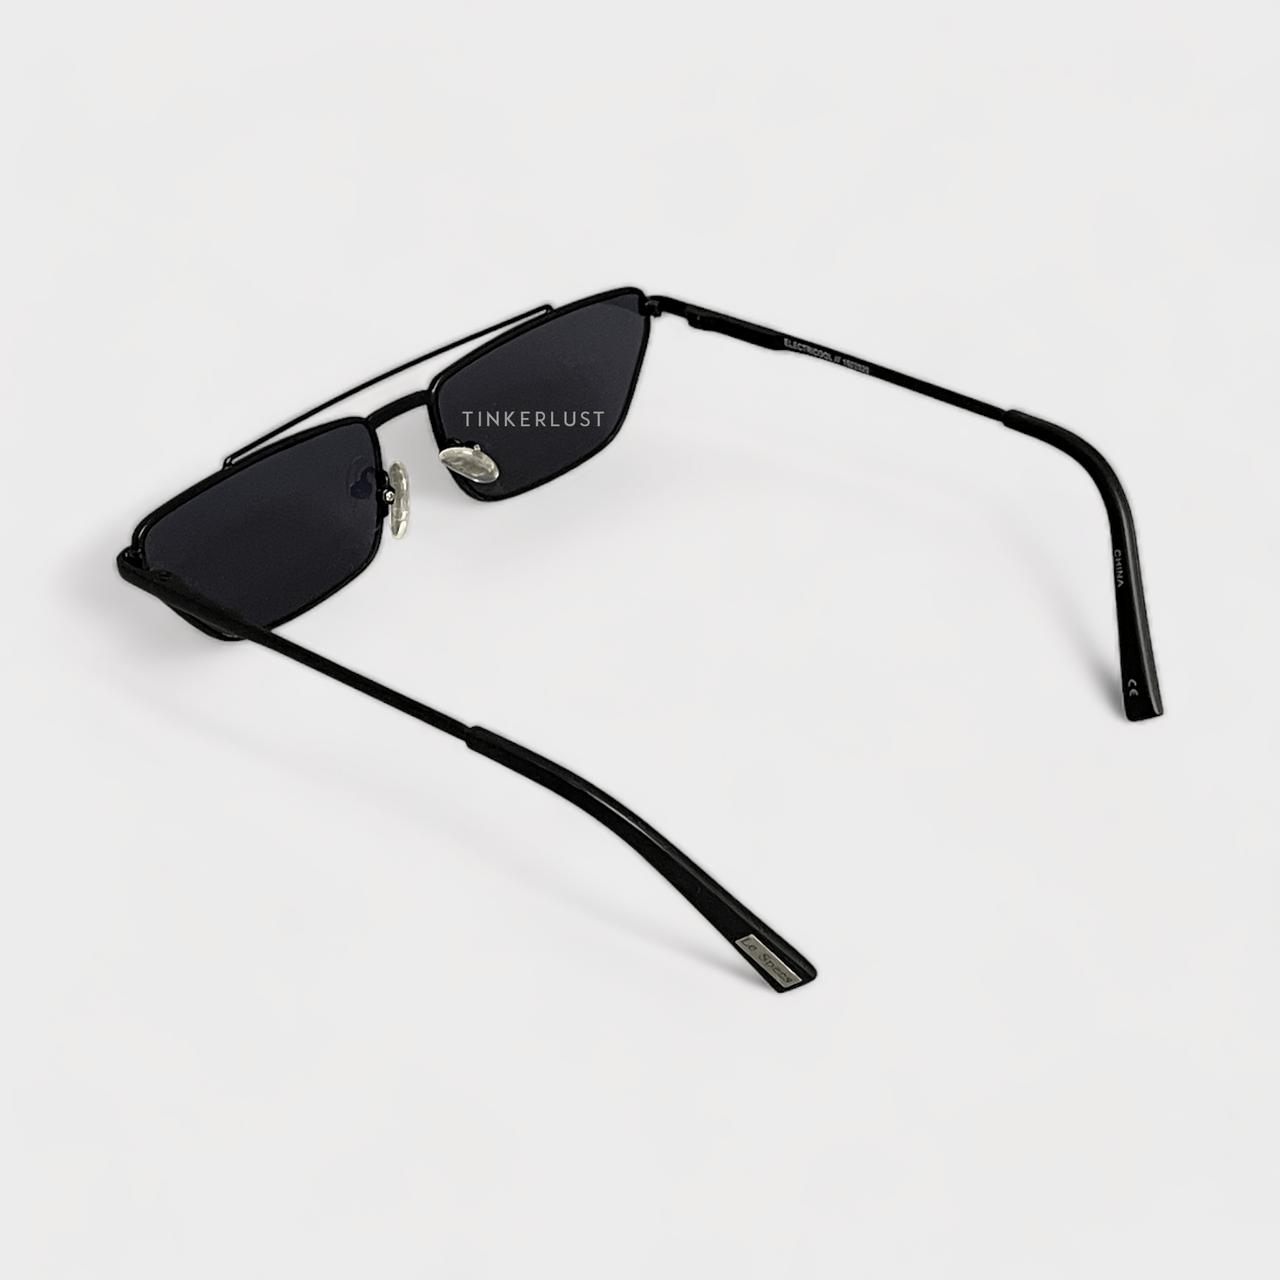 Le Specs Electricool 1902020 Matte Black Sunglasses